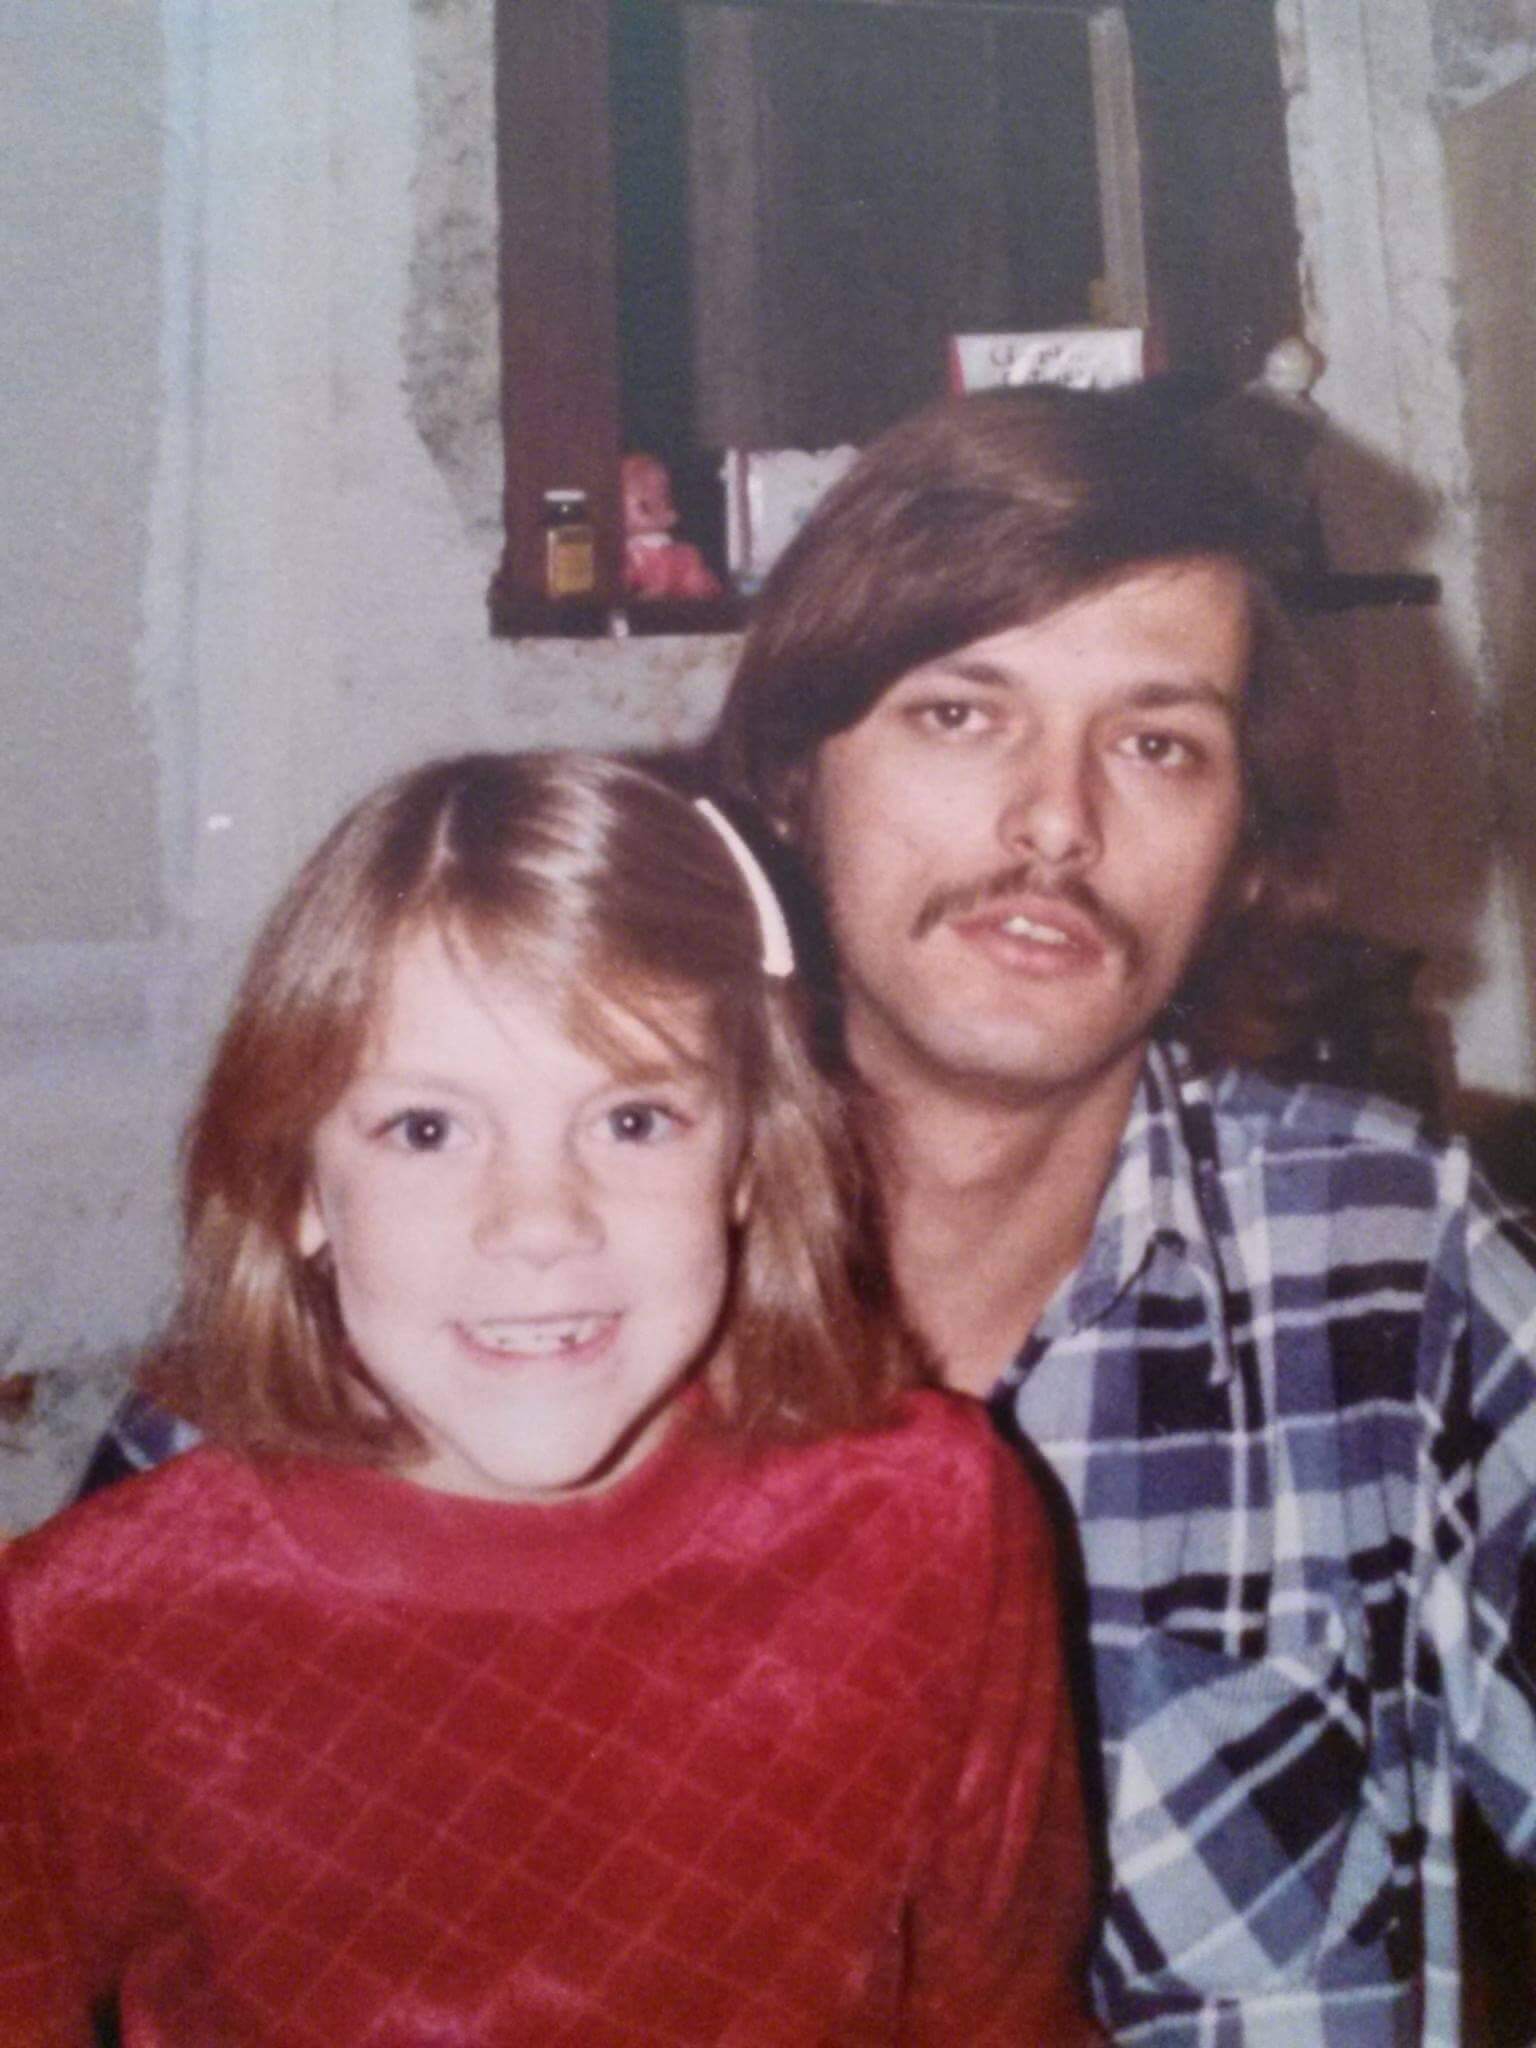 robin stone unsolved murder cold case cambridge ohio 1991